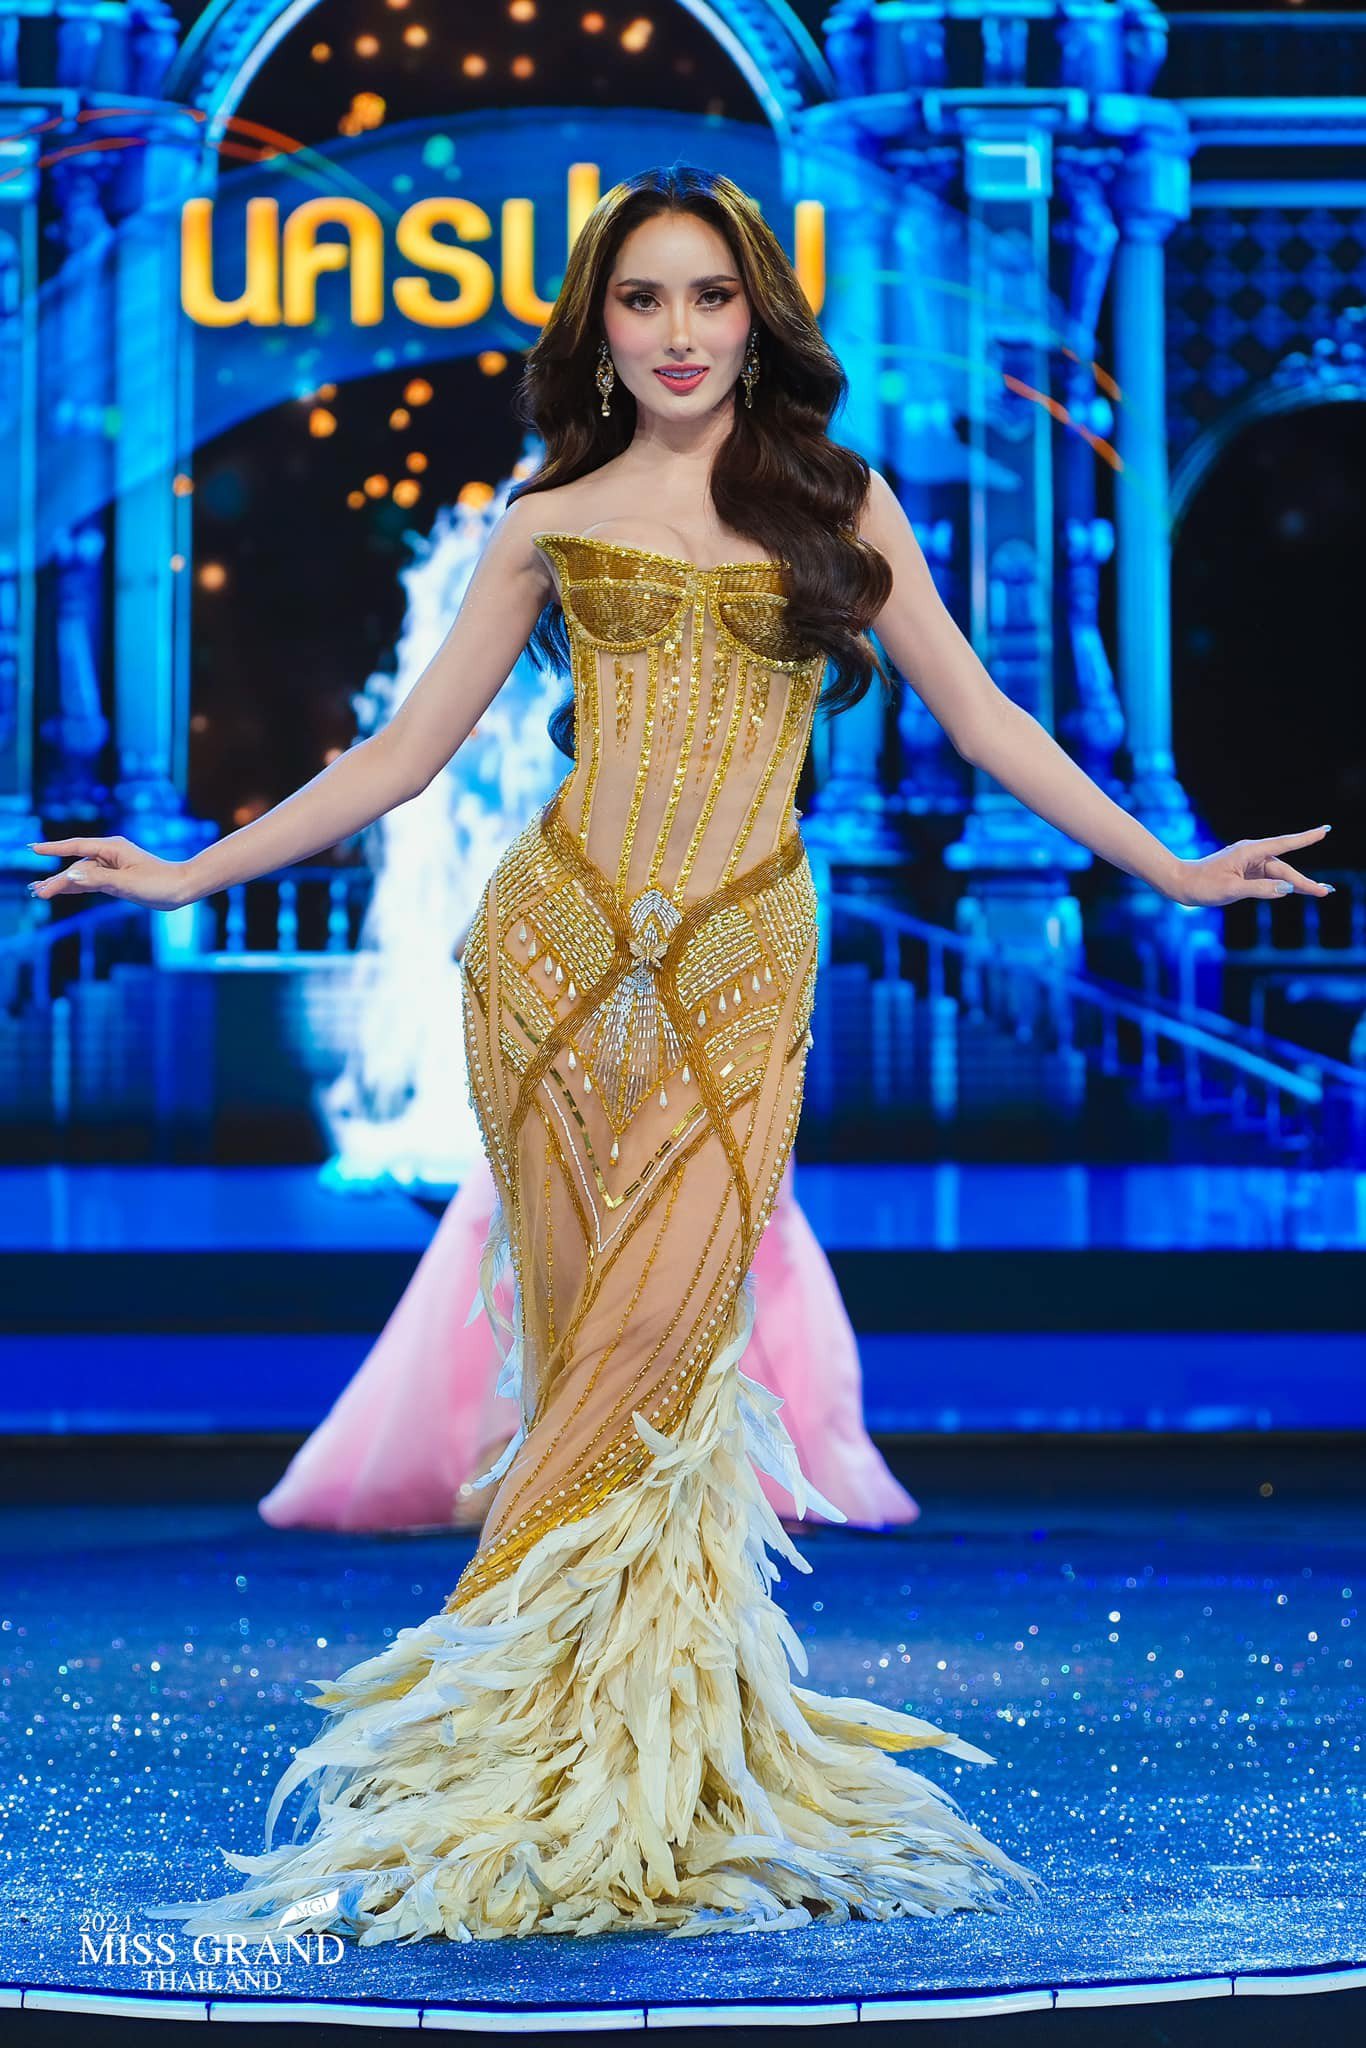 Tuy mới khởi động, Hoa hậu Hòa bình Thái Lan đã thu hút khán giả bằng những vòng thi hấp dẫn, hoành tráng. Đây là một trong những cuộc thi nhan sắc chiếm được sự chú ý của khán giả xứ sở chùa vàng.